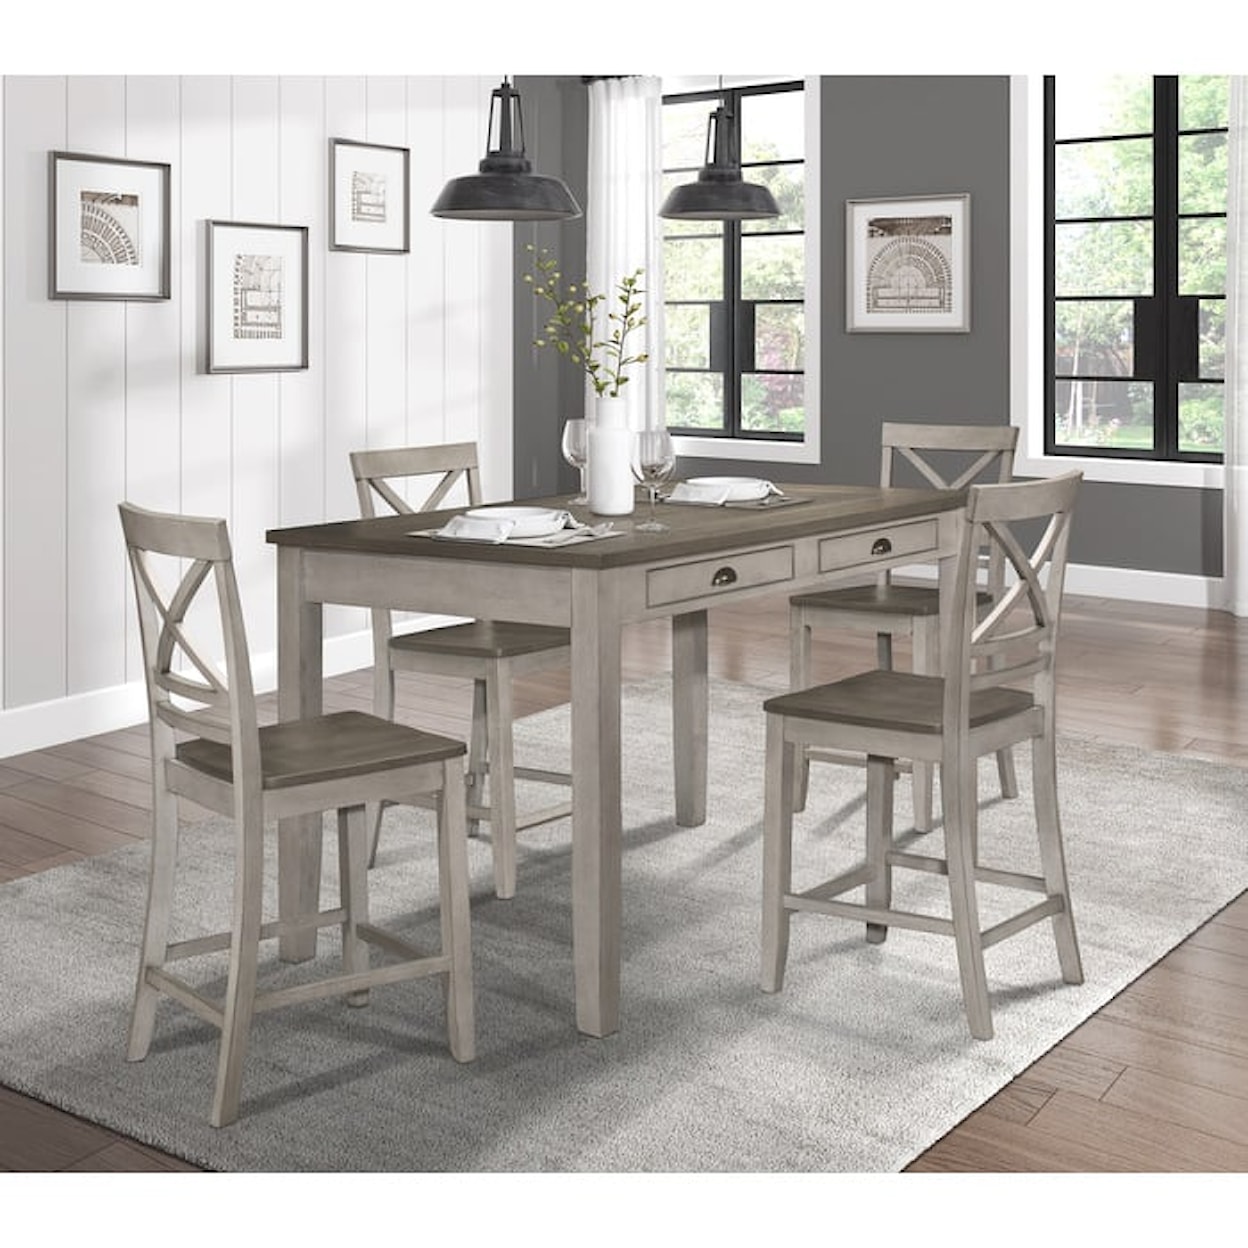 Homelegance Furniture Brightleaf Table